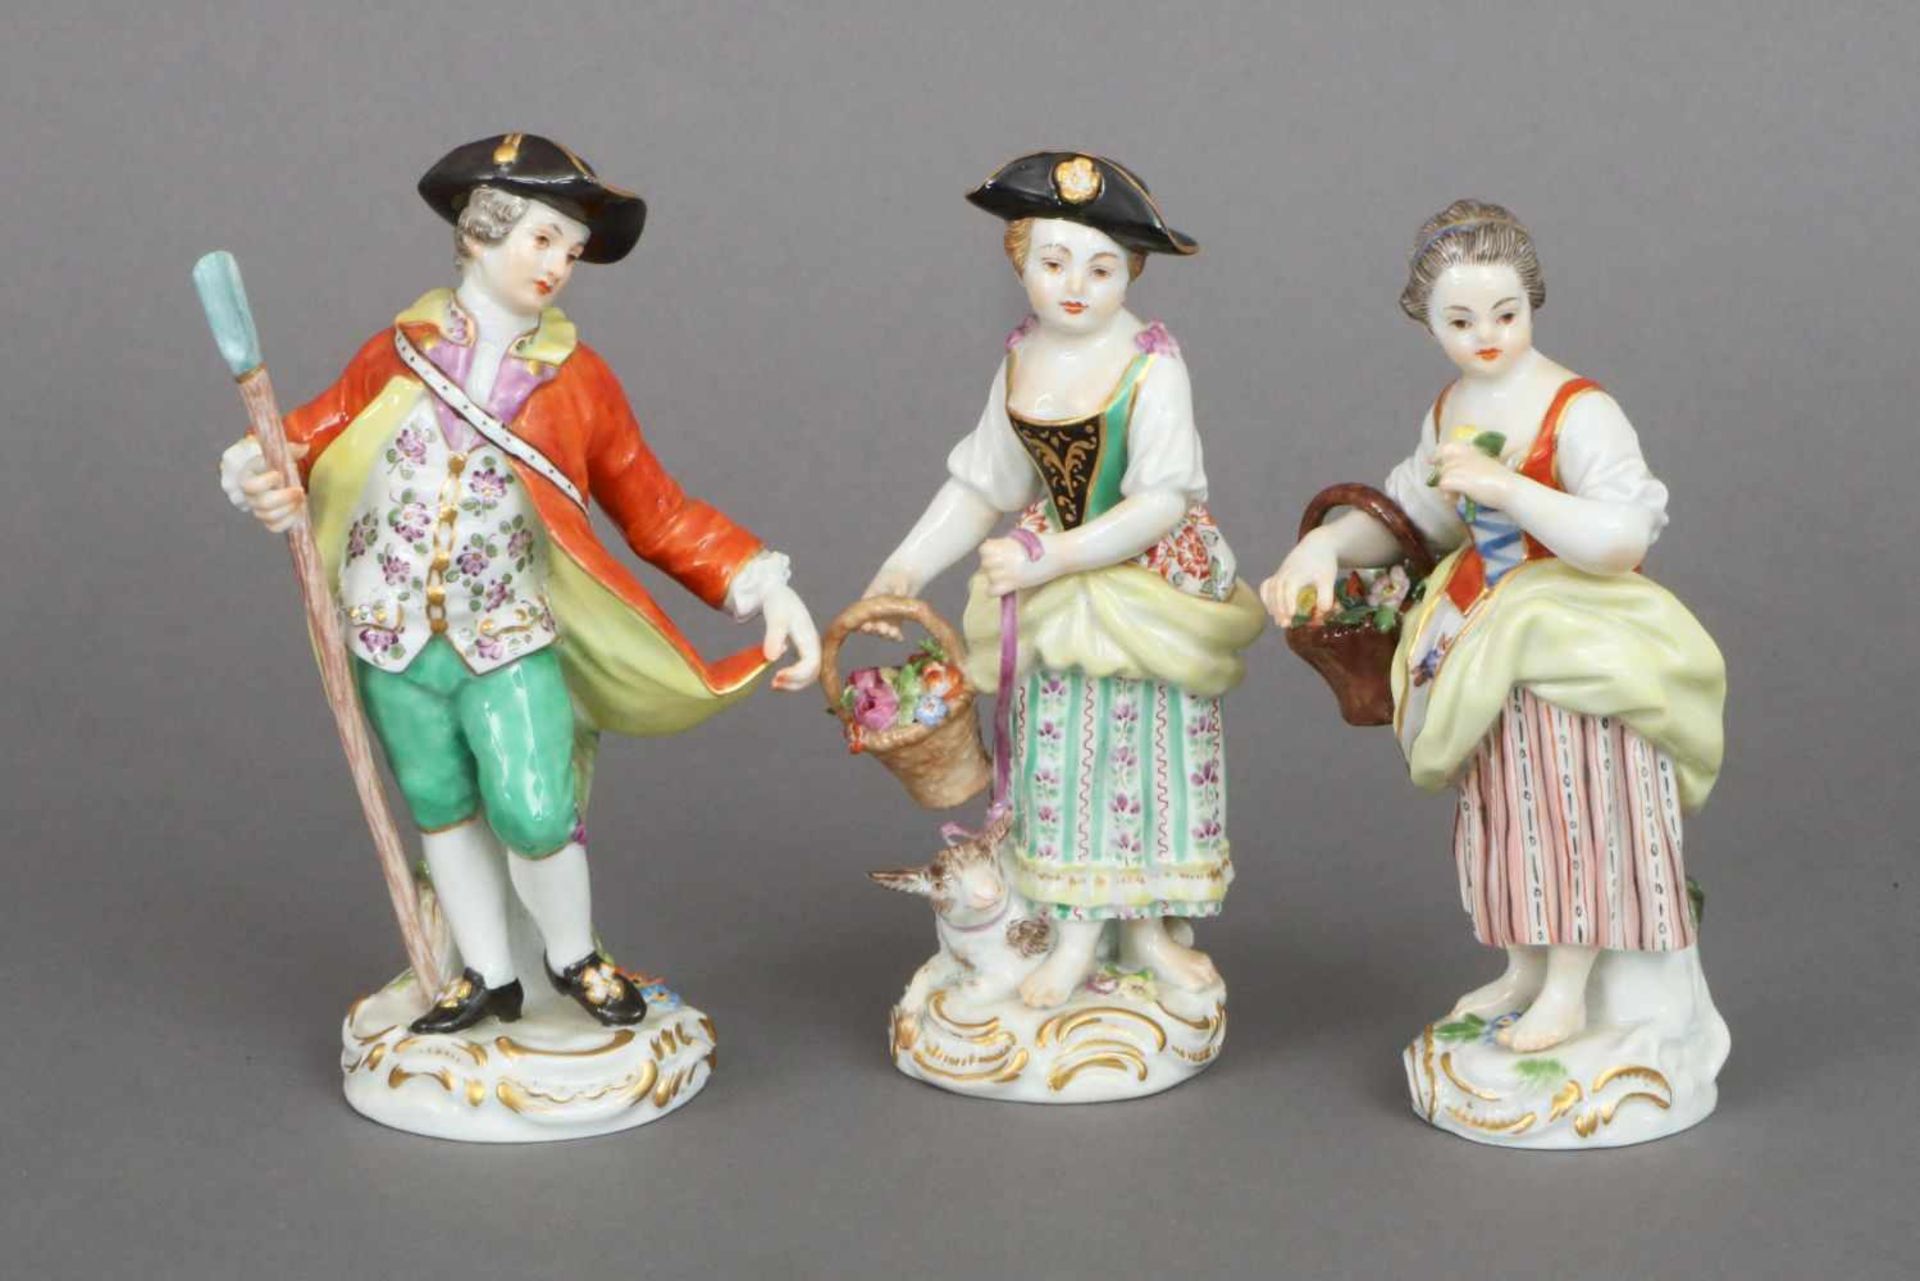 3 MEISSEN Porzellanfiguren (sogenannte ¨Gartenkinder¨)Entwurf J.J. KAENDLER, um 1740, Ausführung